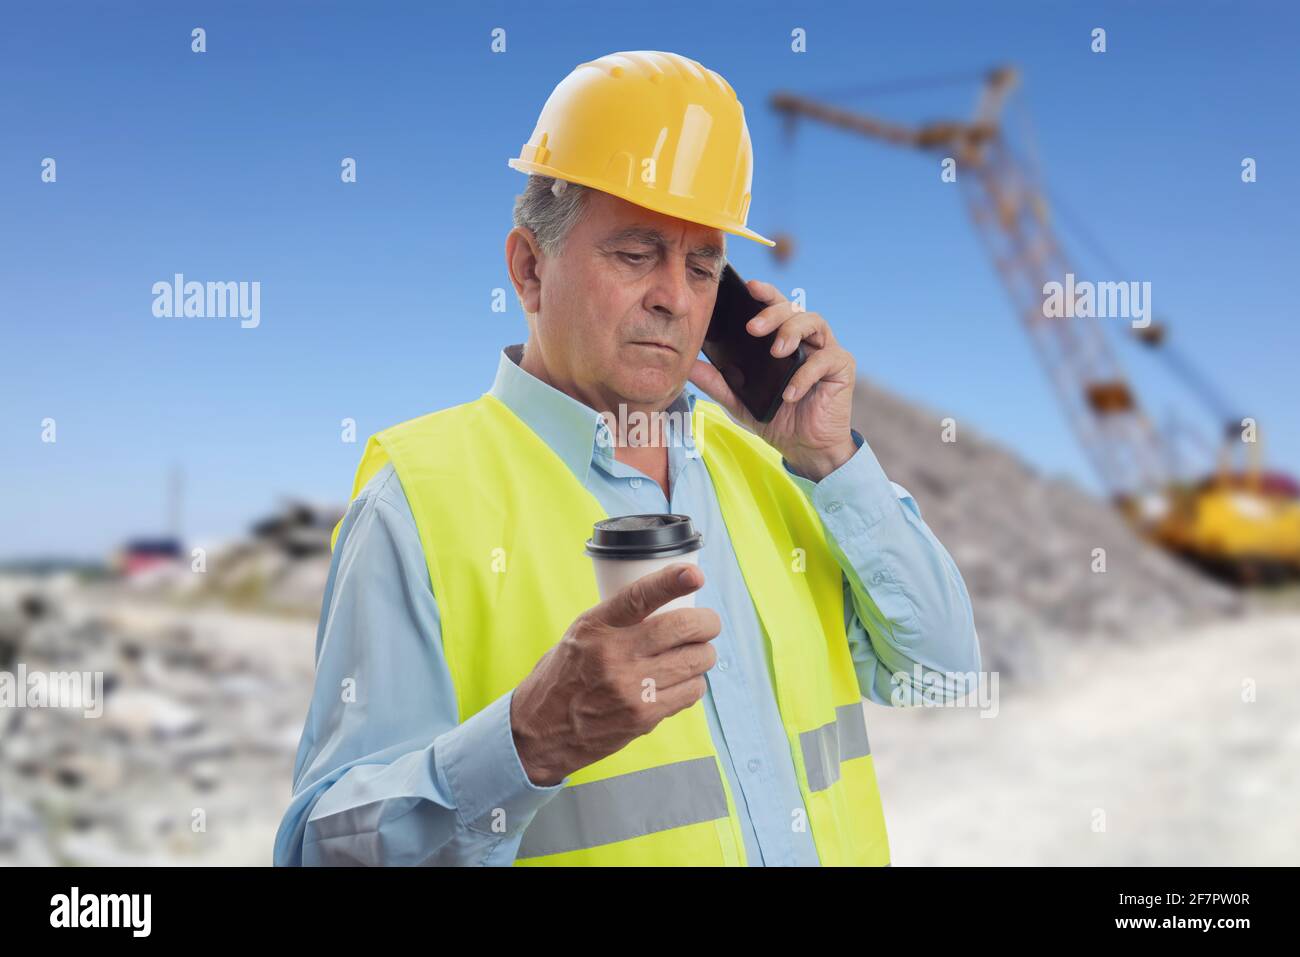 Alter Konstrukteur, der bei der Arbeit auf dem Smartphone spricht hardhat und Weste halten Kaffee in Take-away Papierbecher mit Baustelle Hintergrund Stockfoto